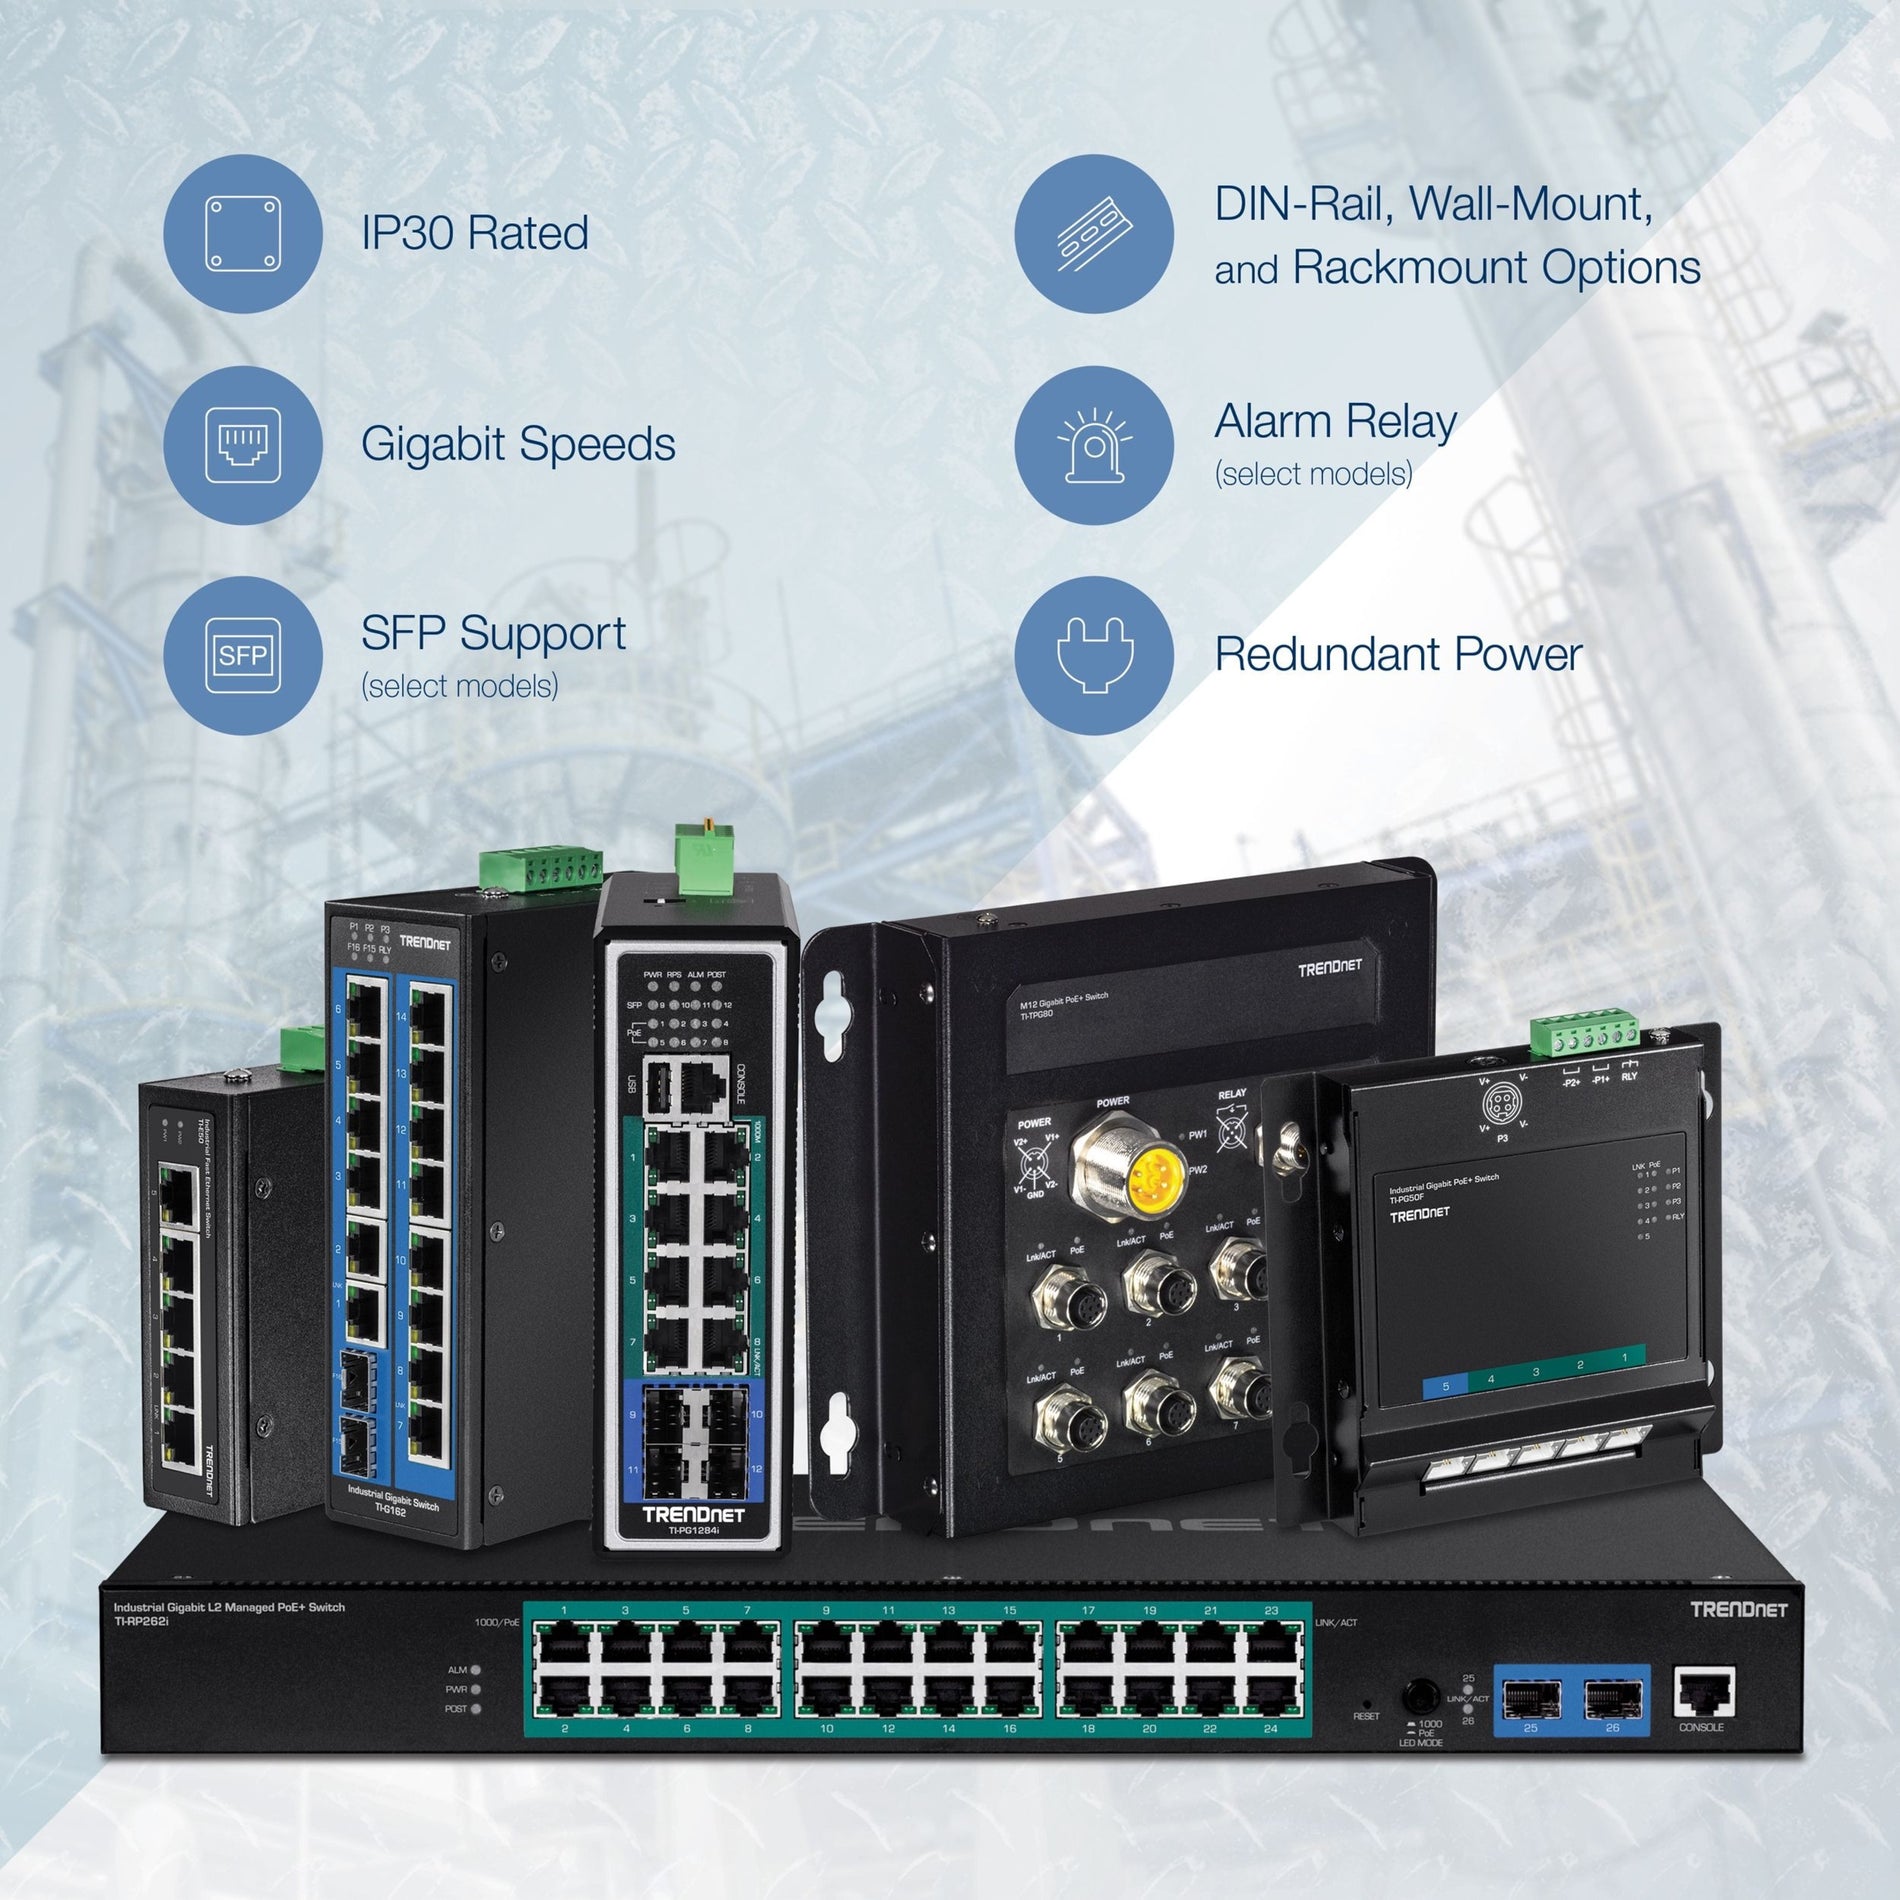 TRENDnet TI-G50 5-port indurito Switch industriale Gigabit capacità di commutazione 10 Gbps Switch di rete valutato IP30 (-40 a 167 ?F) staffe DIN-Rail e parete incluse Protezione a vita Nero